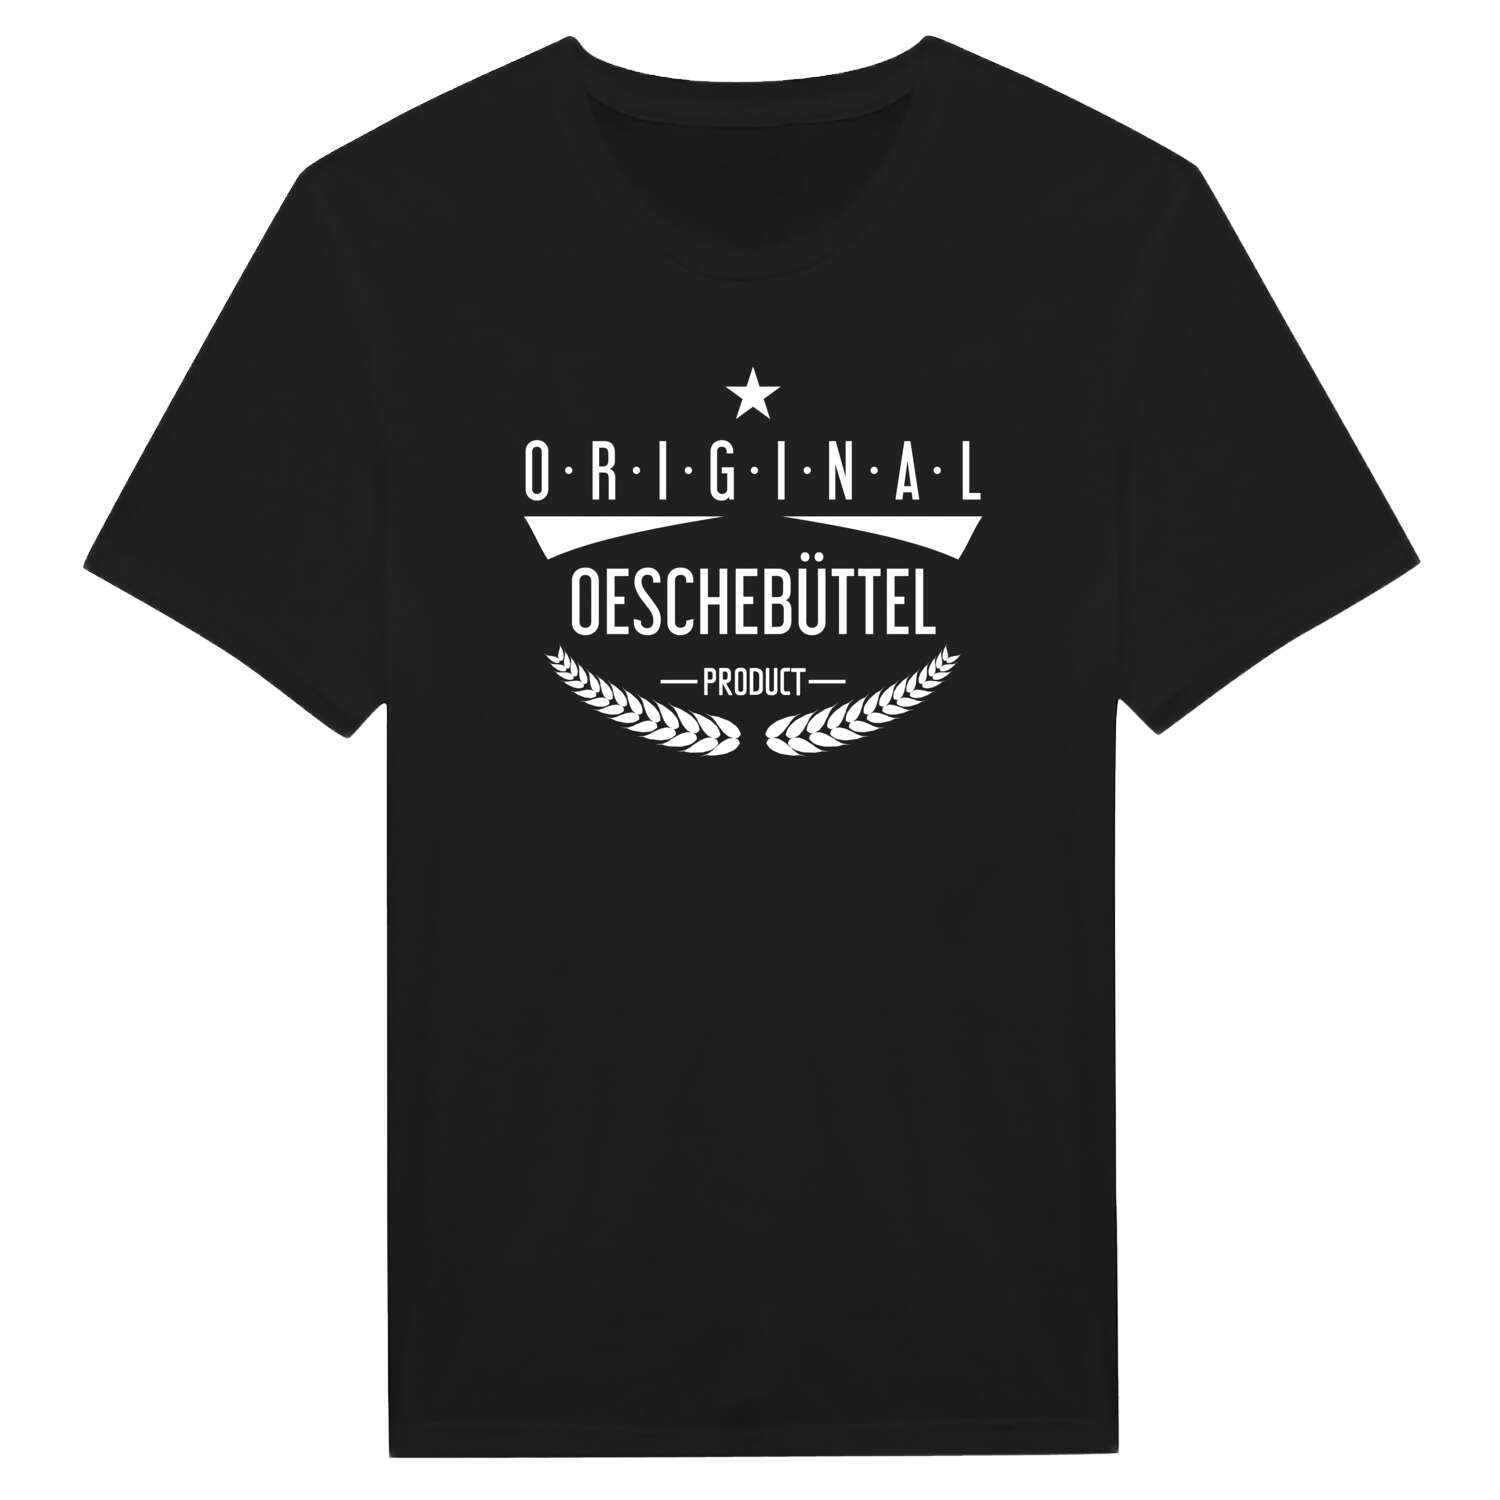 Oeschebüttel T-Shirt »Original Product«